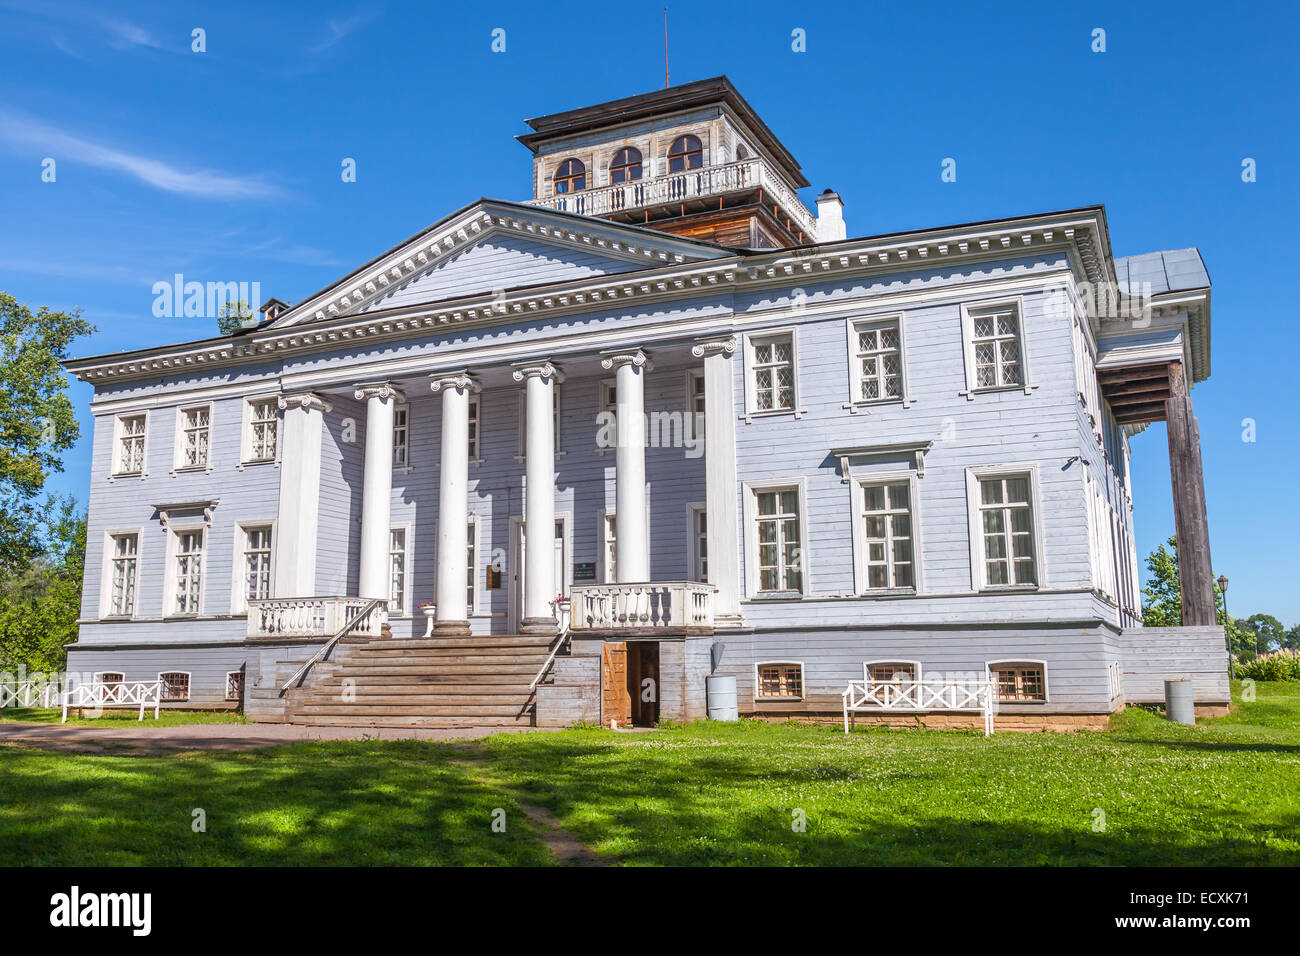 Rozhdestveno, Russia - July 7, 2014: The Rozhdestveno Memorial Estate. Facade of museum in Leningrad Oblast, Russian Federation. Stock Photo